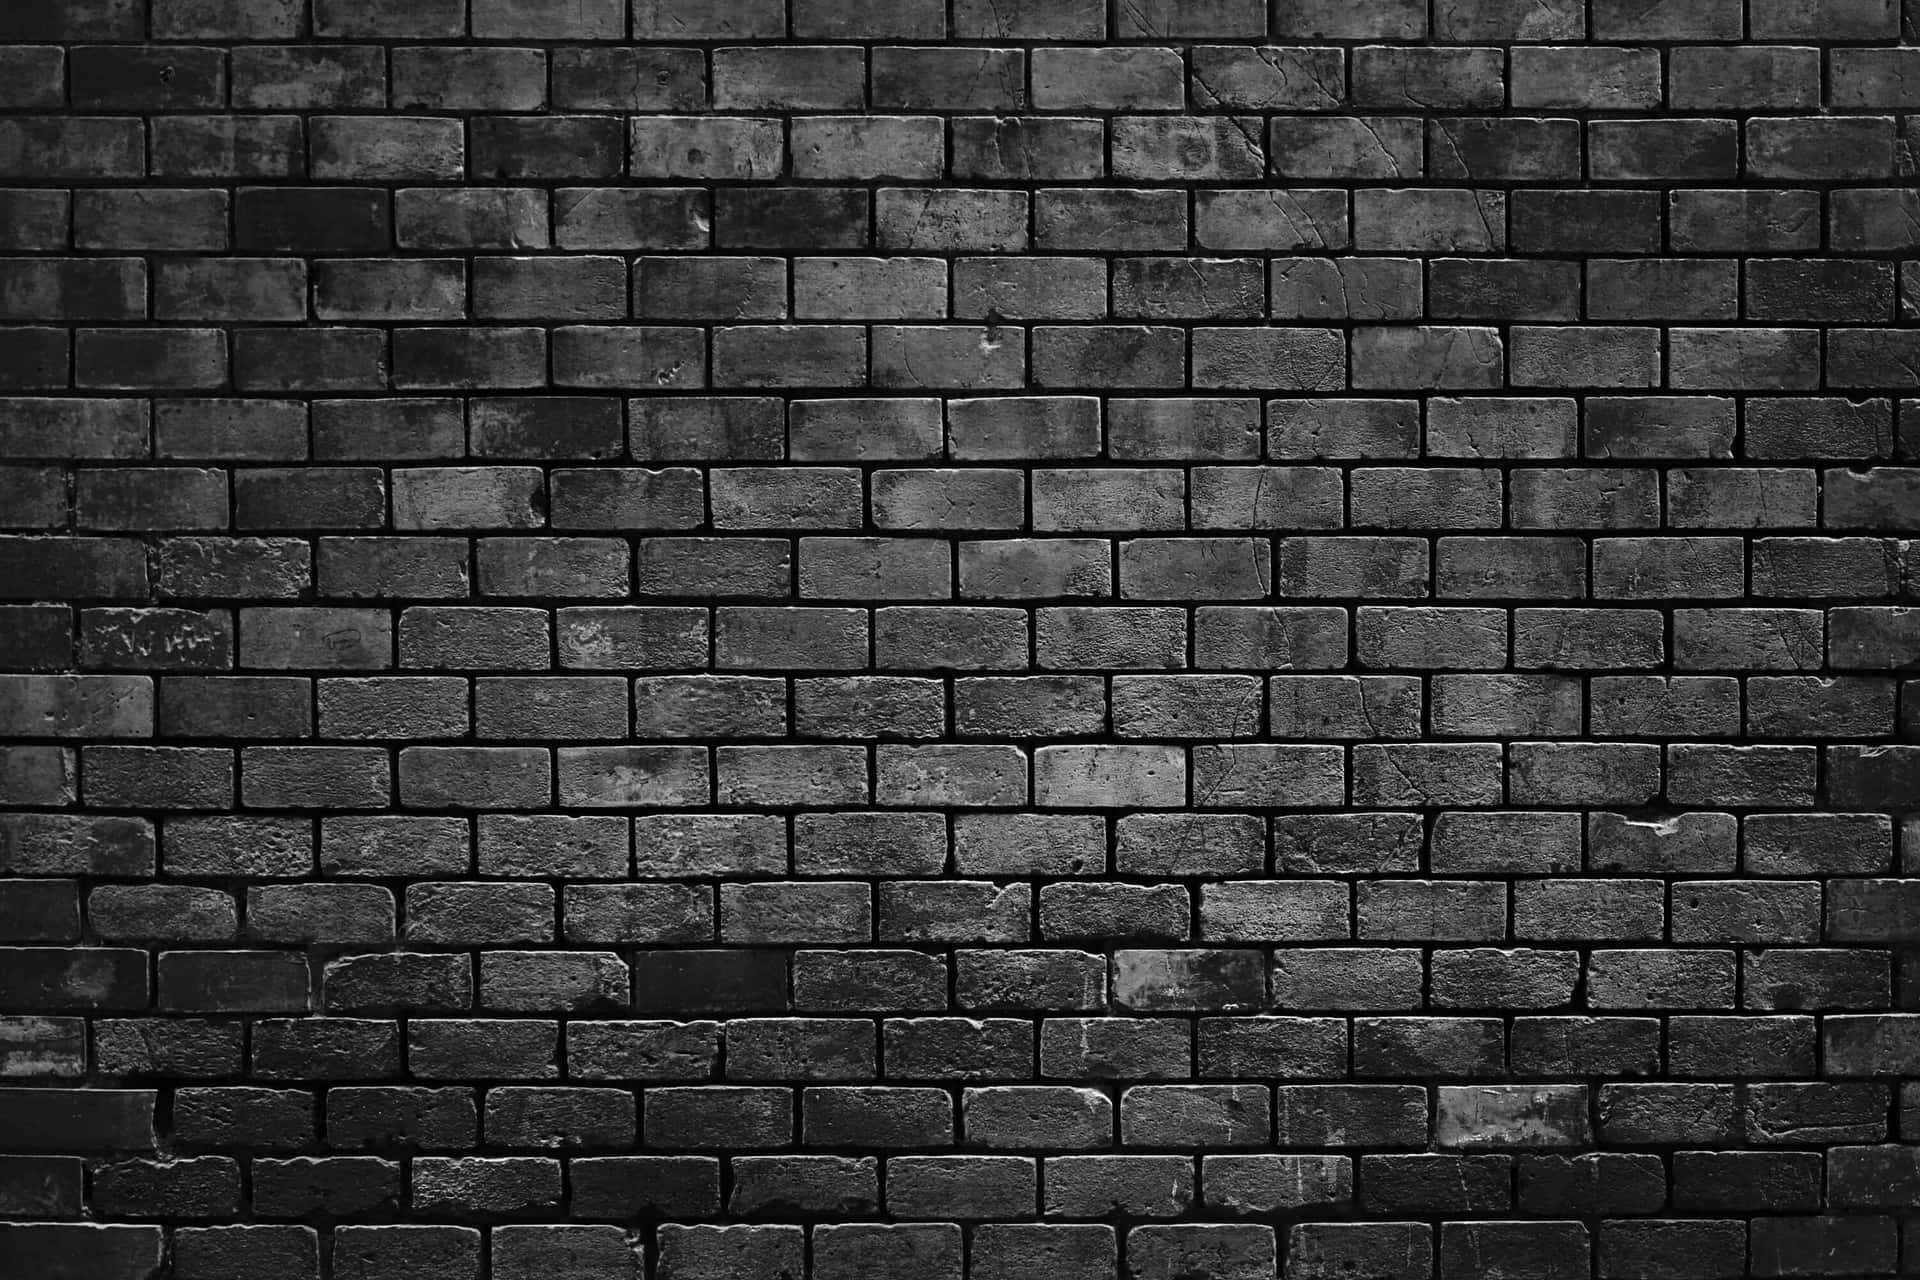 Black Brick Wallpaper Images  Free Download on Freepik